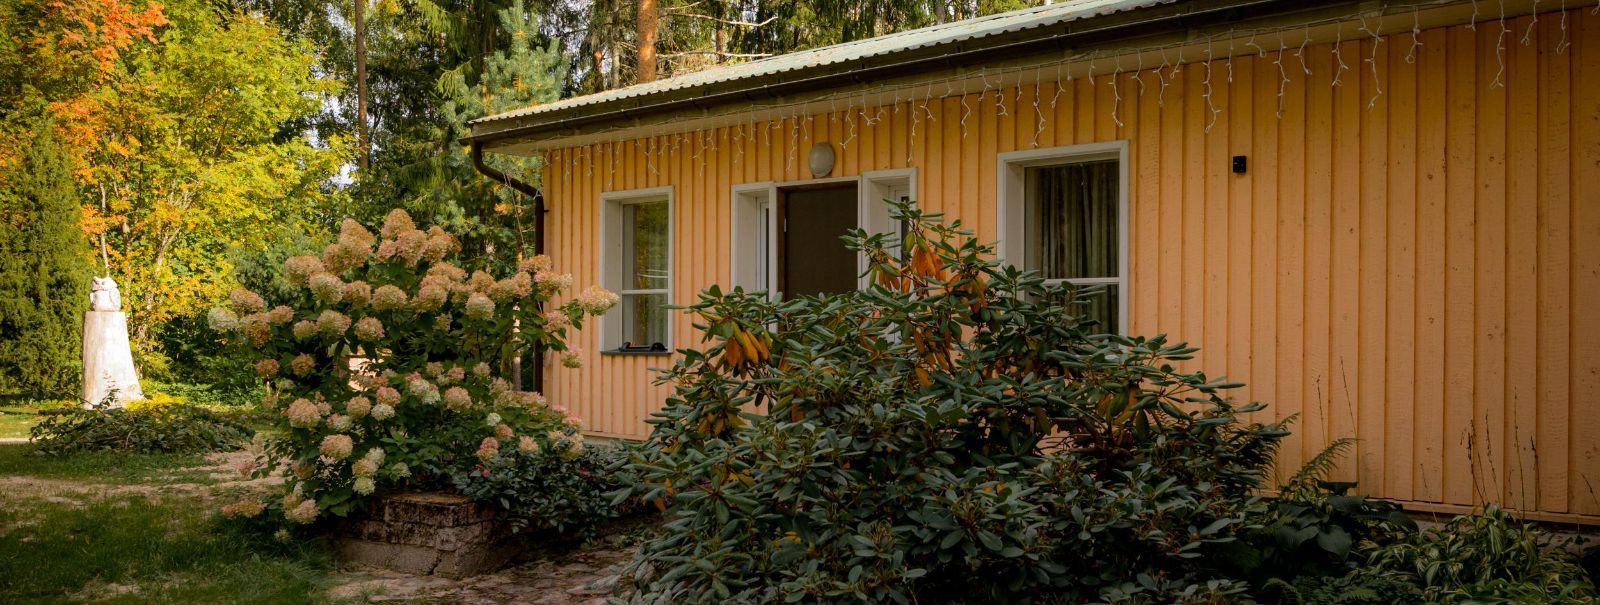 Traditsiooniline Eesti saun on rohkem kui lihtsalt pesemiskoht; see on tervise, lõõgastuse ja kogukonna varjupaik. Saunal on sajanditevanused juured ja see on o